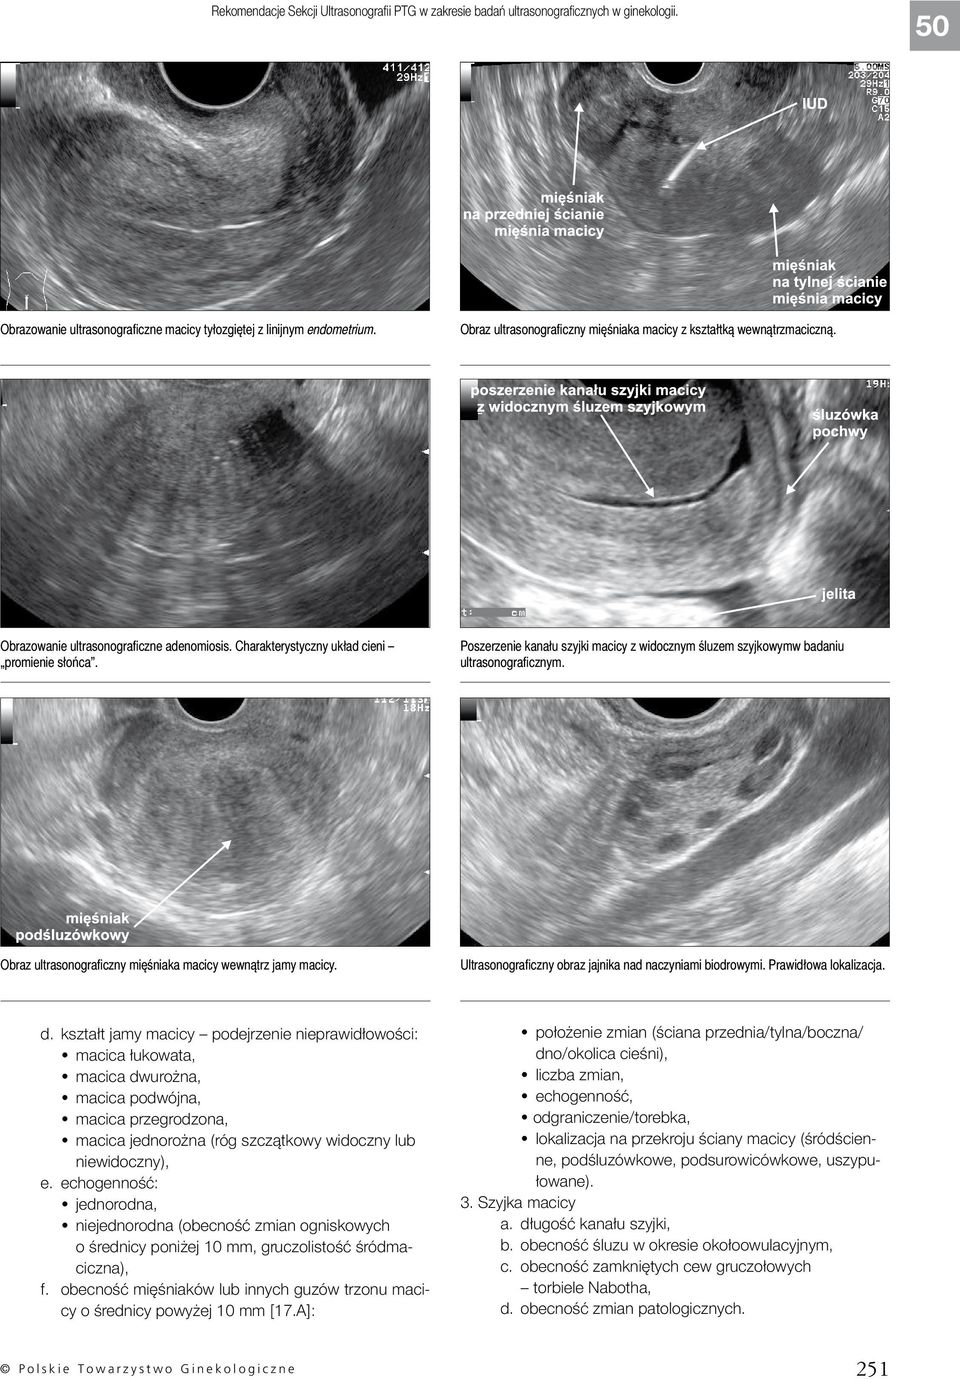 Poszerzenie kanału szyjki macicy z widocznym śluzem szyjkowymw badaniu ultrasonograficznym. Obraz ultrasonograficzny mięśniaka macicy wewnątrz jamy macicy.